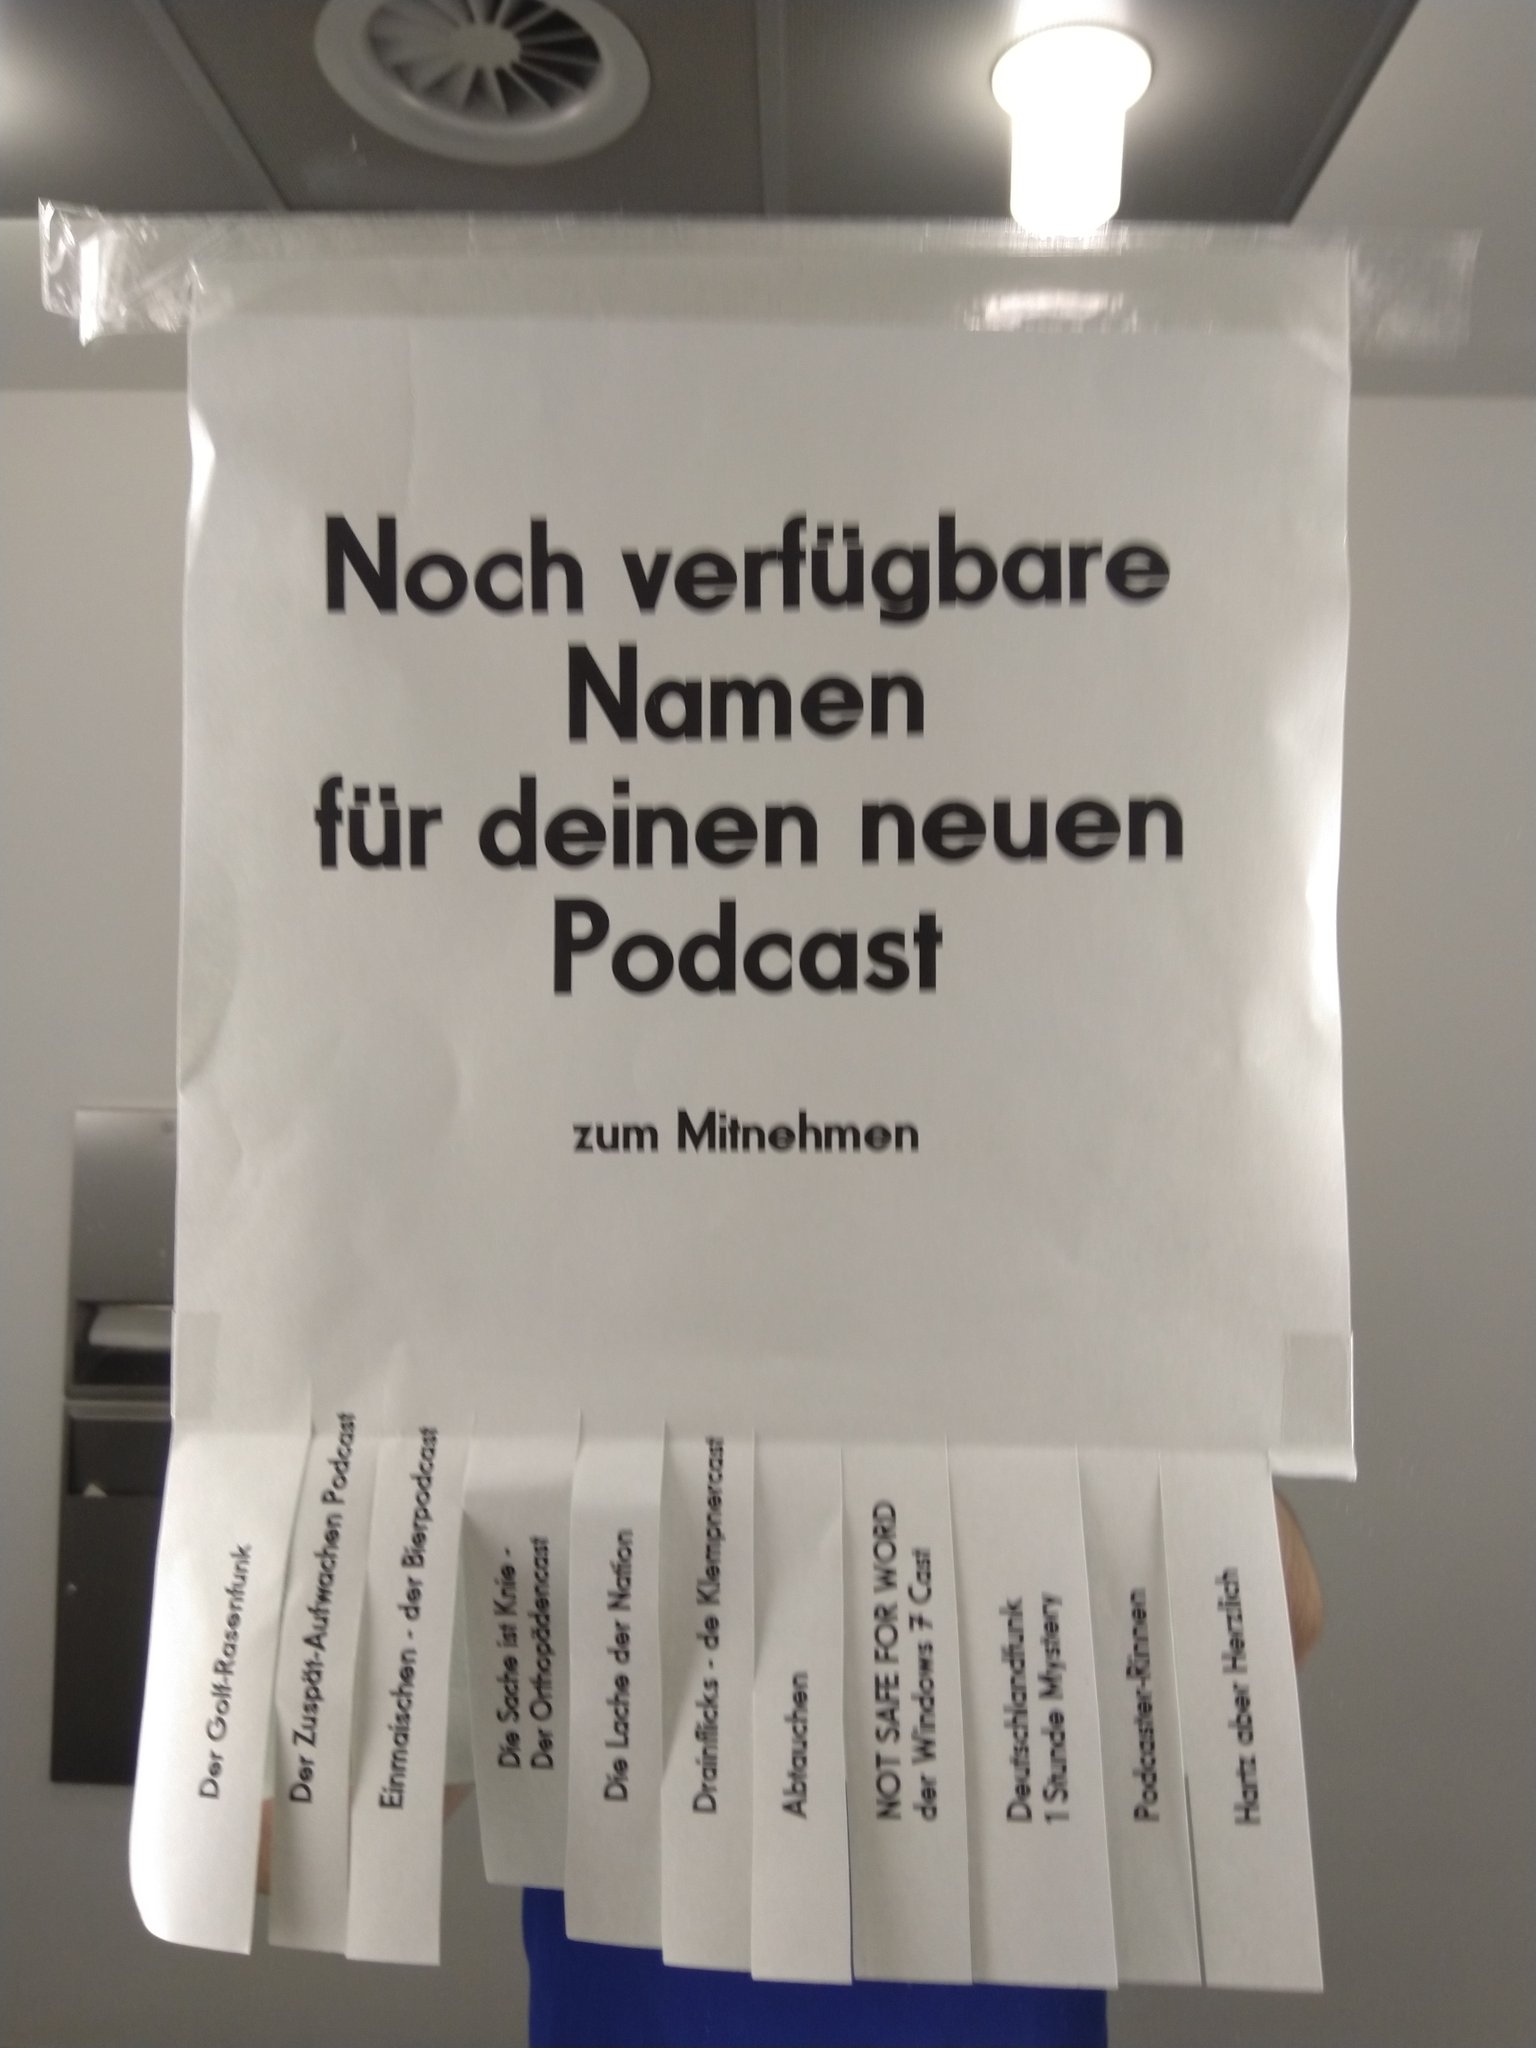 kieliscalling on Twitter: "Auf dem Herren WC: #Podcast Namen zum Abreißen  😁 #Subscribe10 https://t.co/HSuAF3KuBg" / Twitter